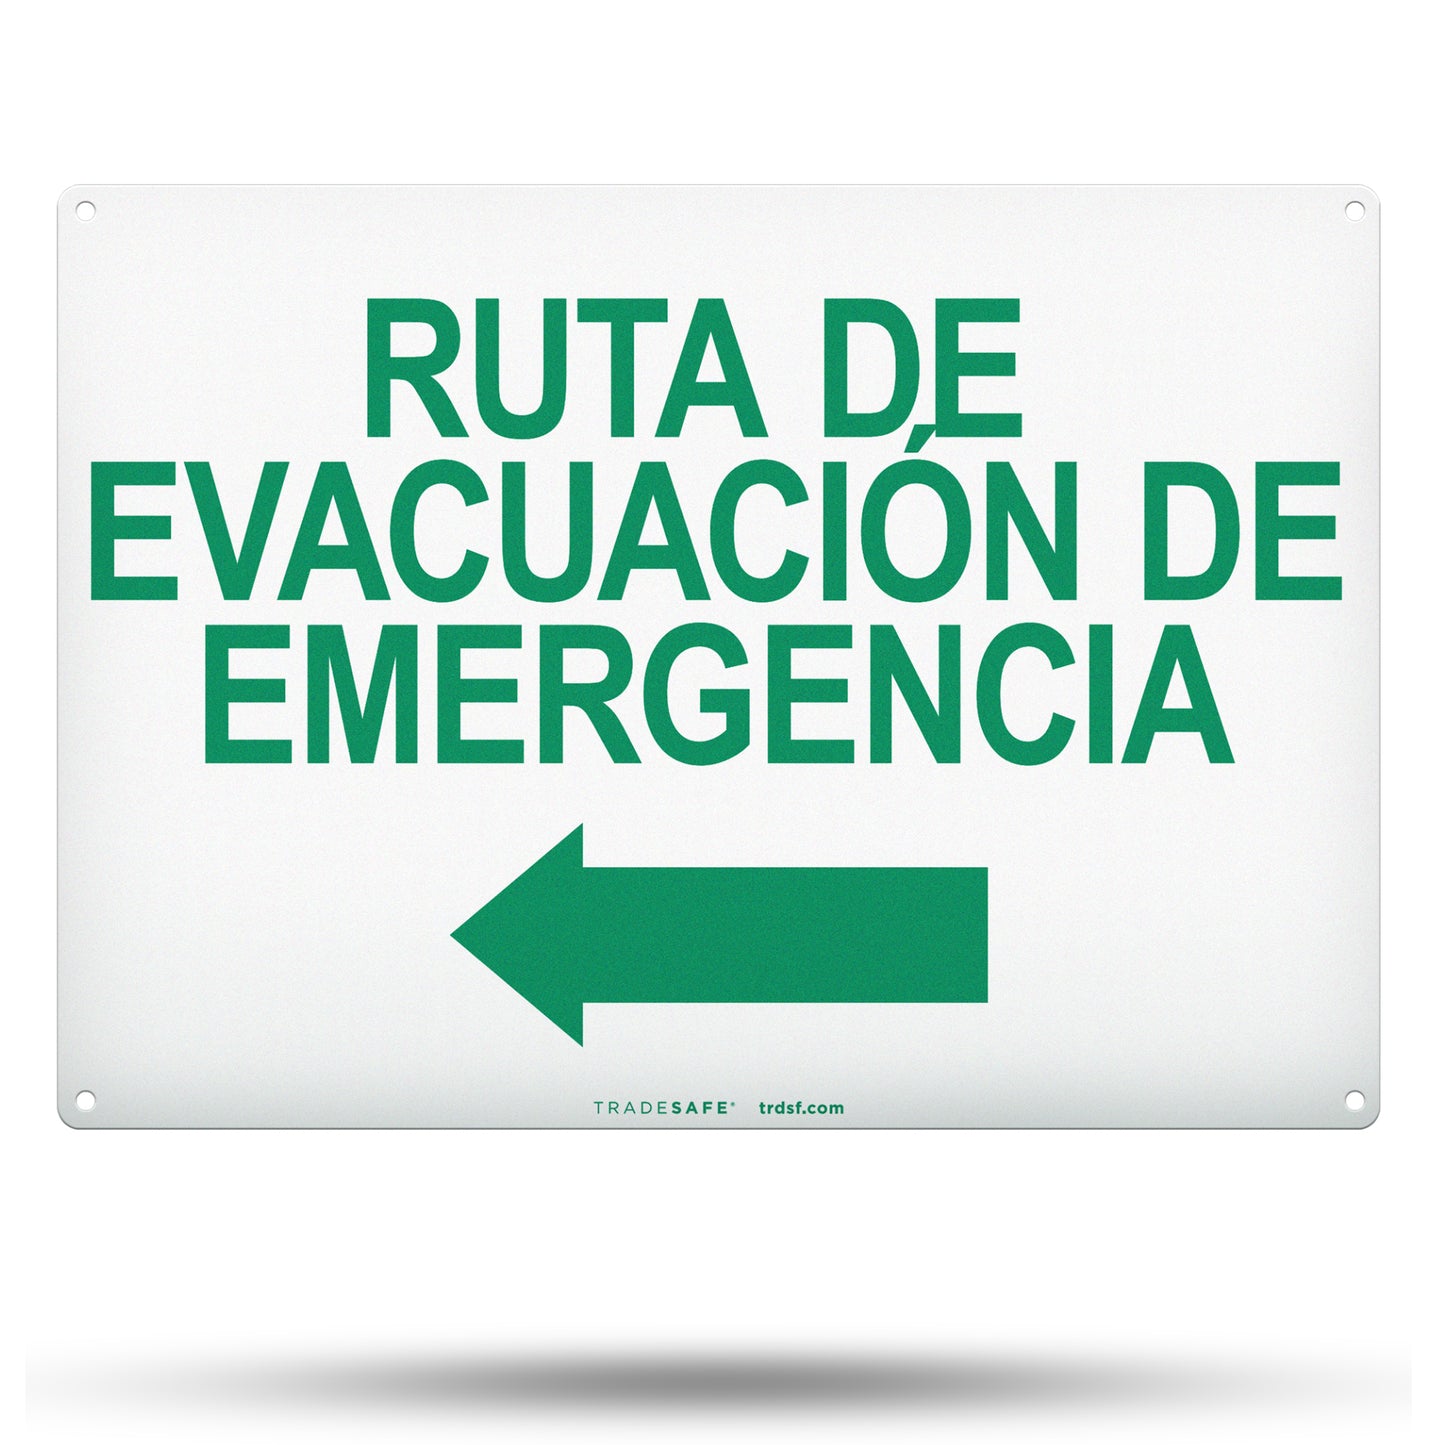 ruta de evacuación de emergencia sign with left arrow